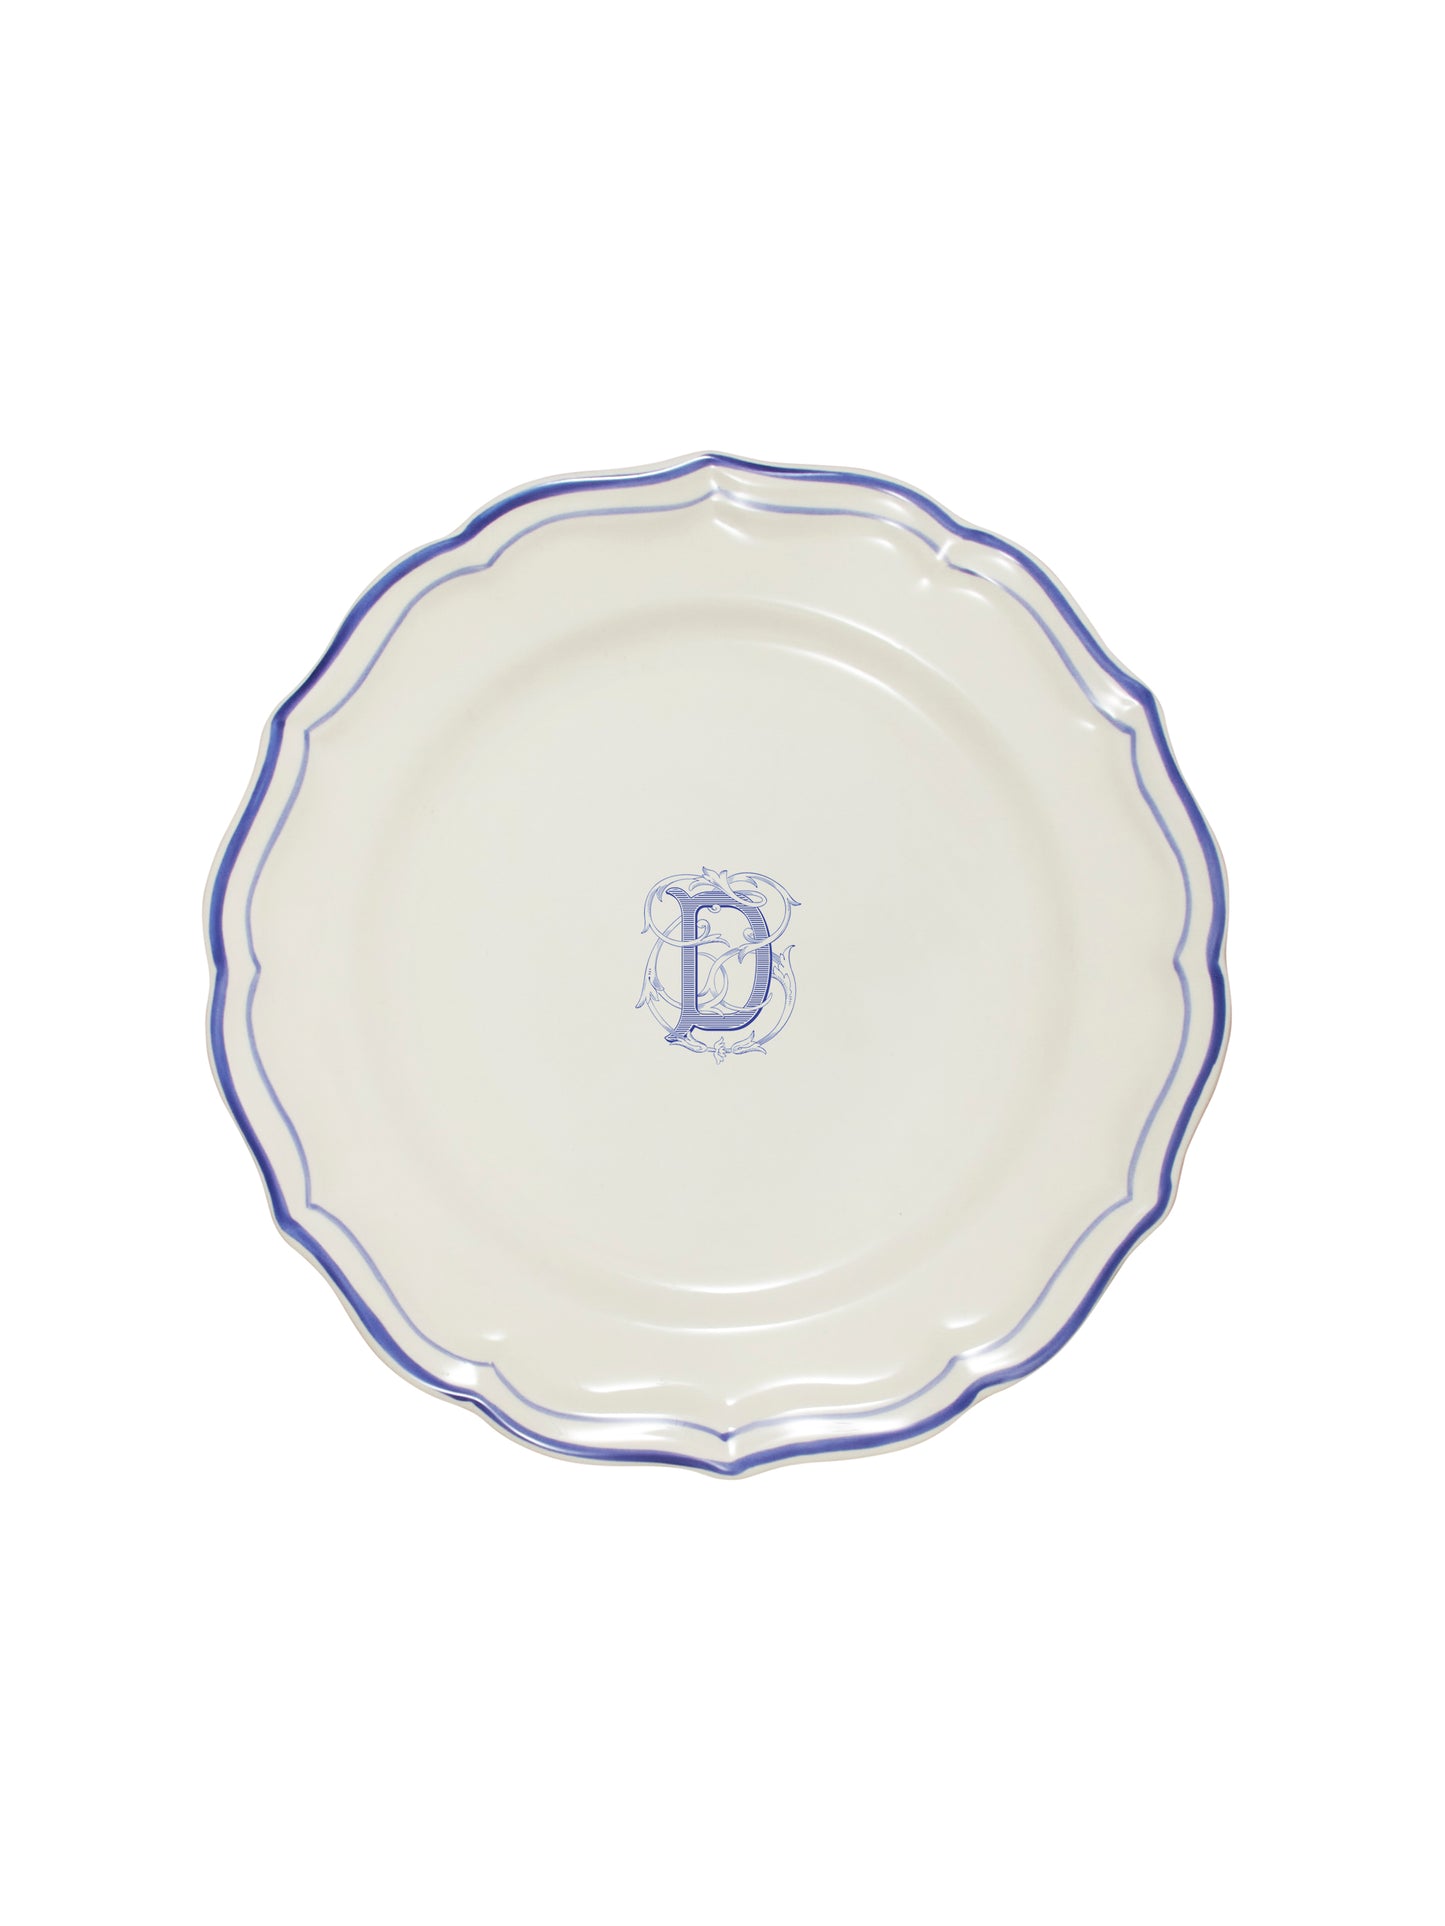 Gien Filet Bleu Dinner Plate D Weston Table